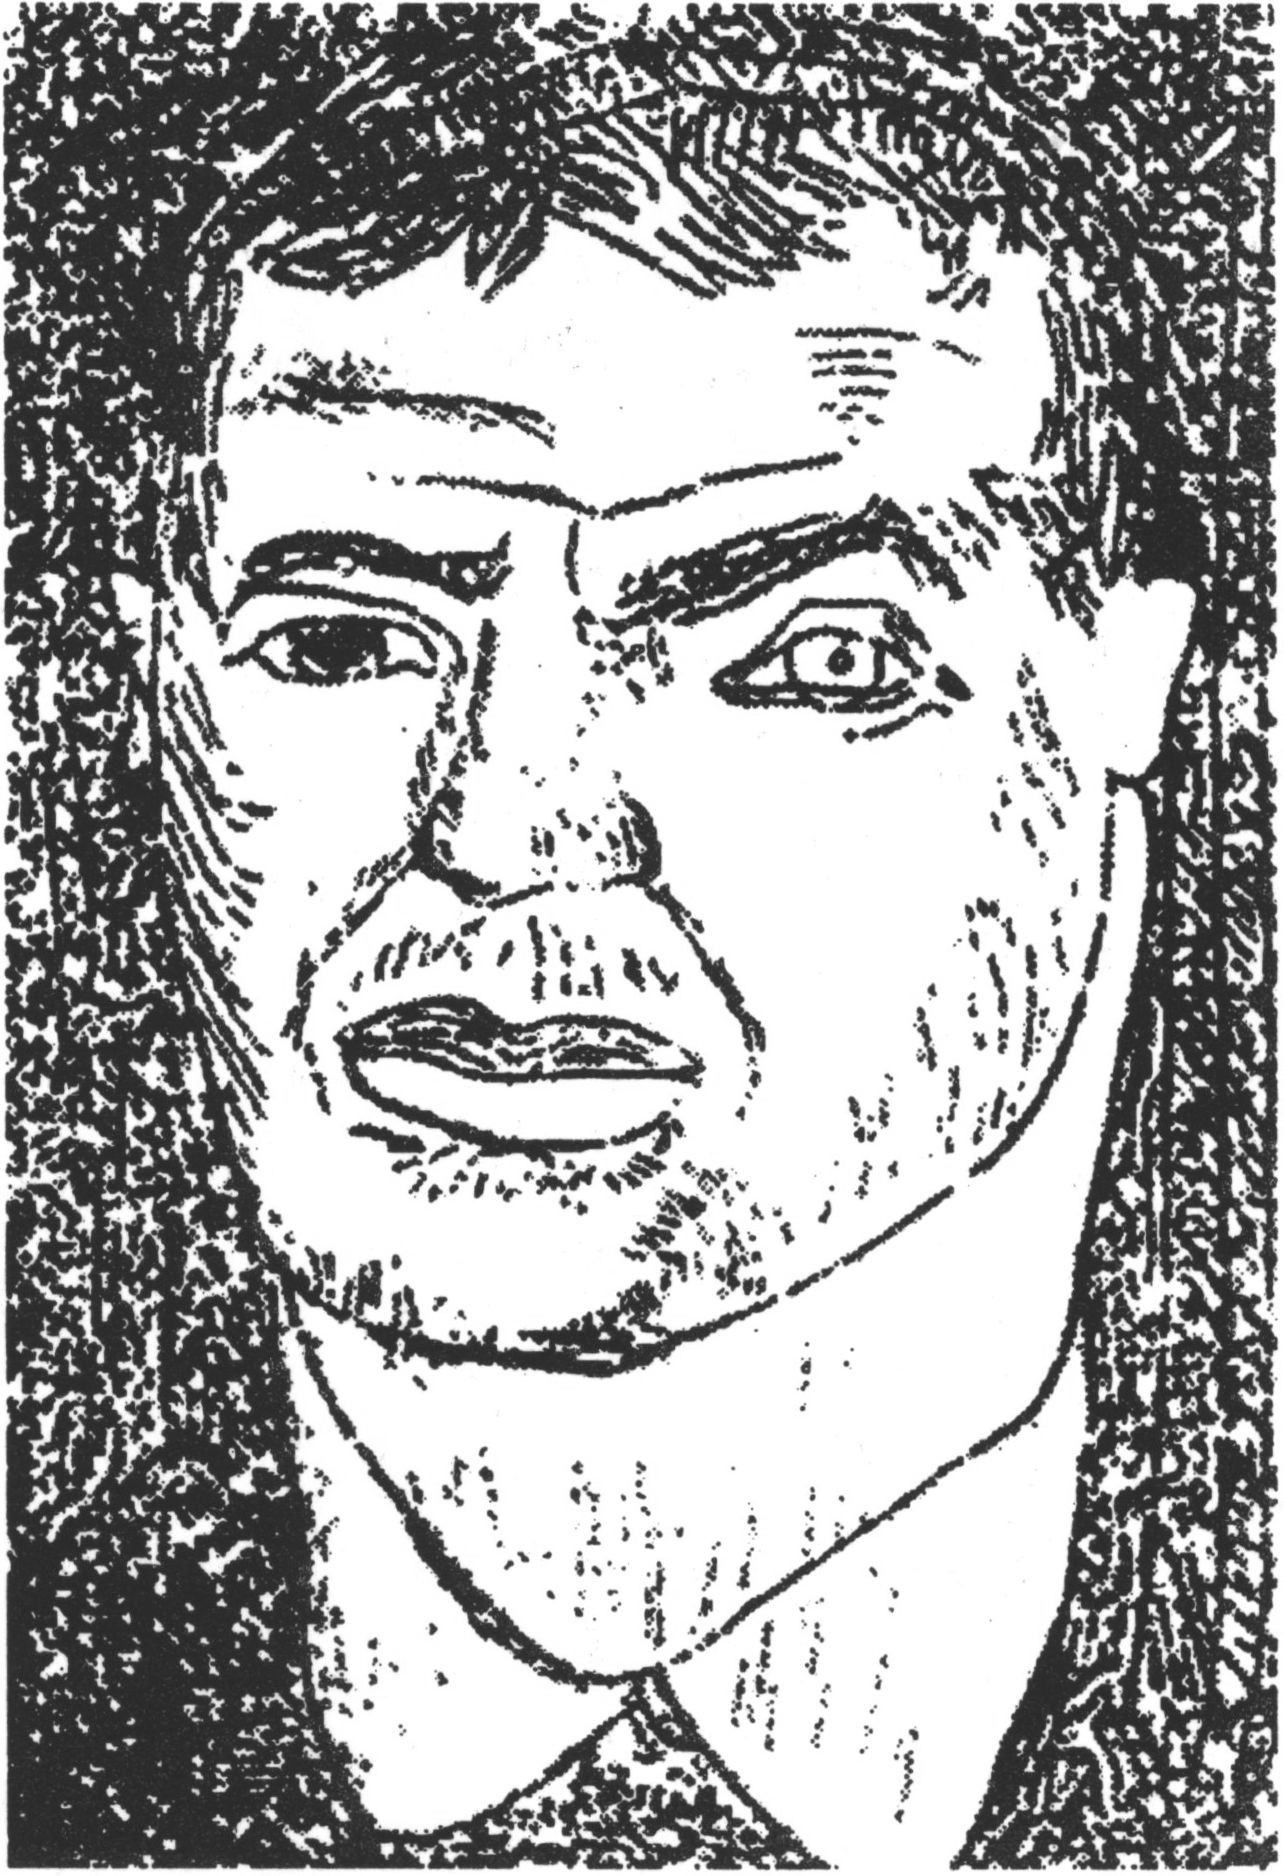 Давид Бурлюк в 1911 году. Офорт В. Бурлюка